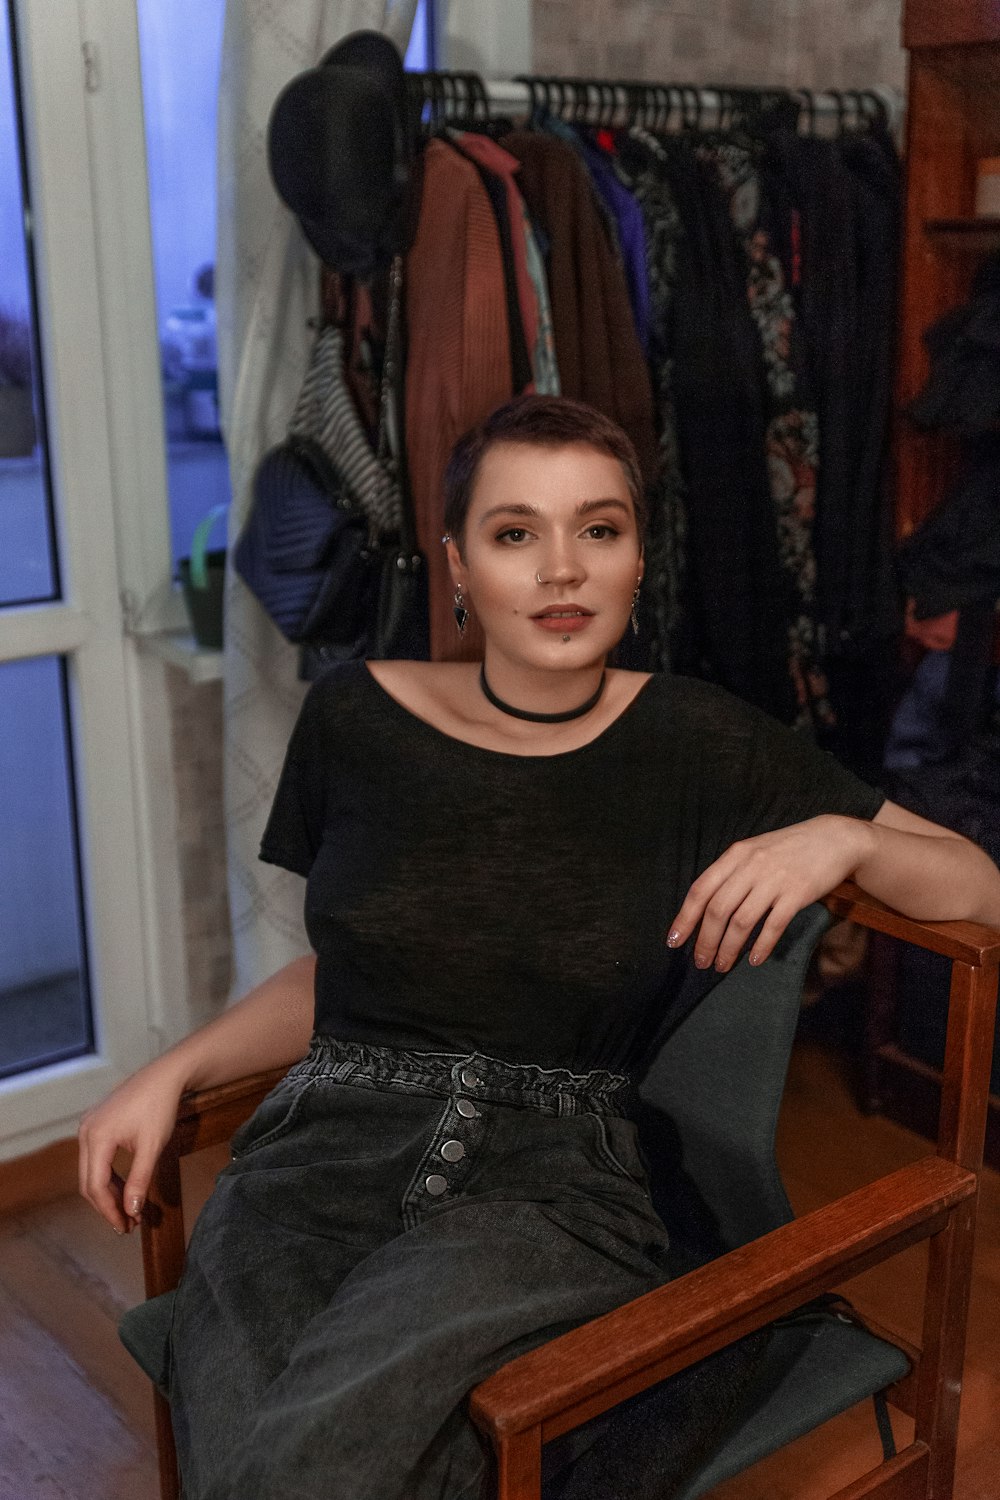 Una mujer sentada en una silla frente a un estante de ropa